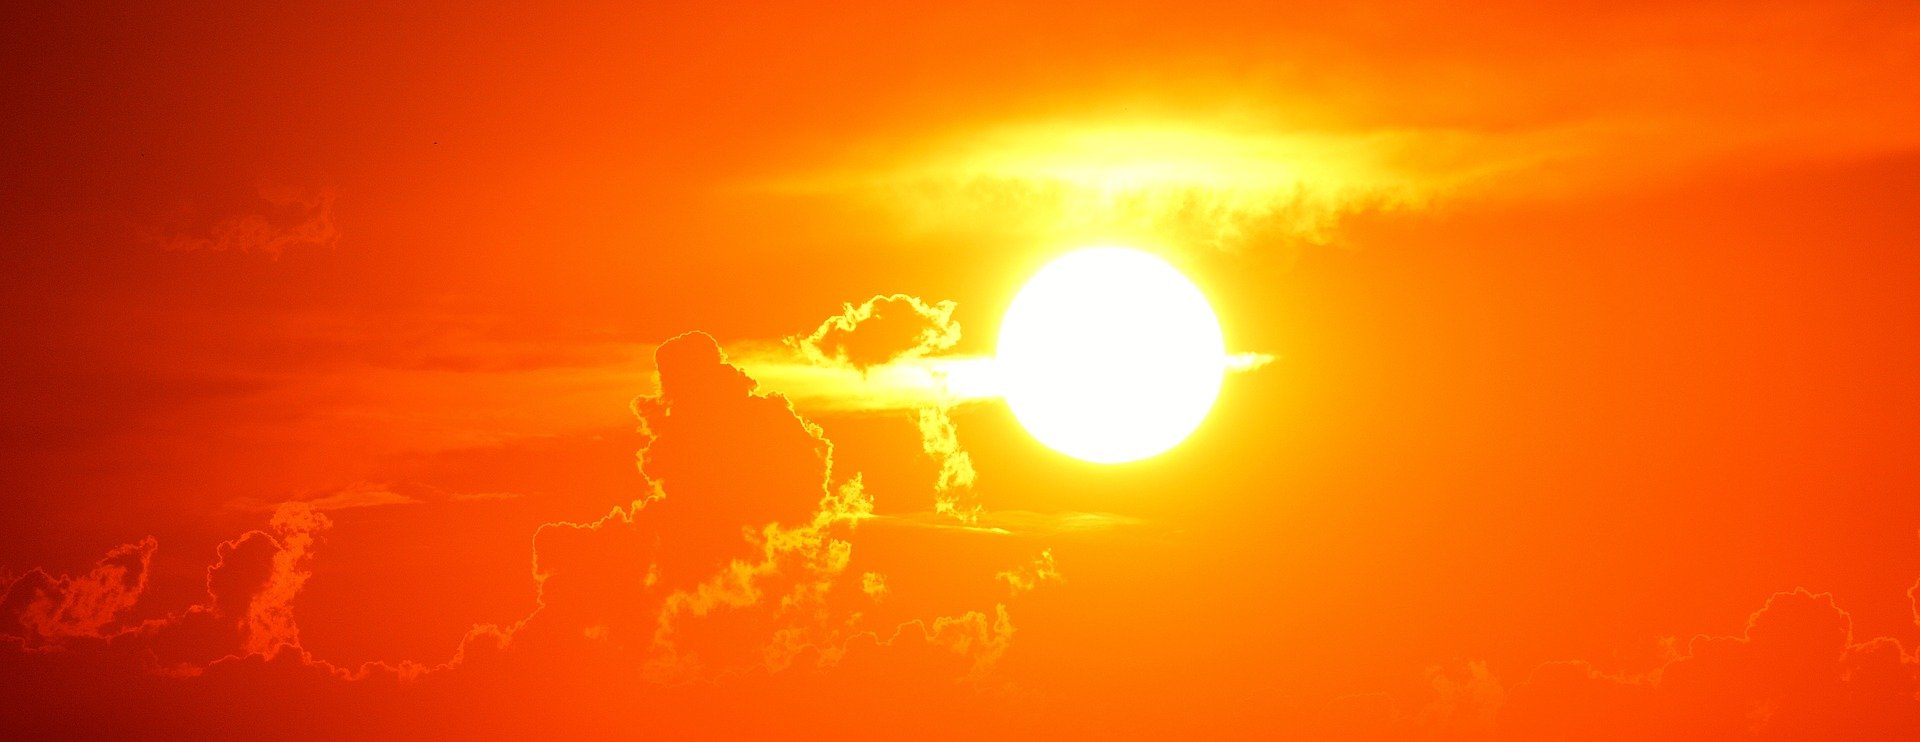 Sanidad activa la alerta por calor extremo en 100 municipios entre ellos Villena